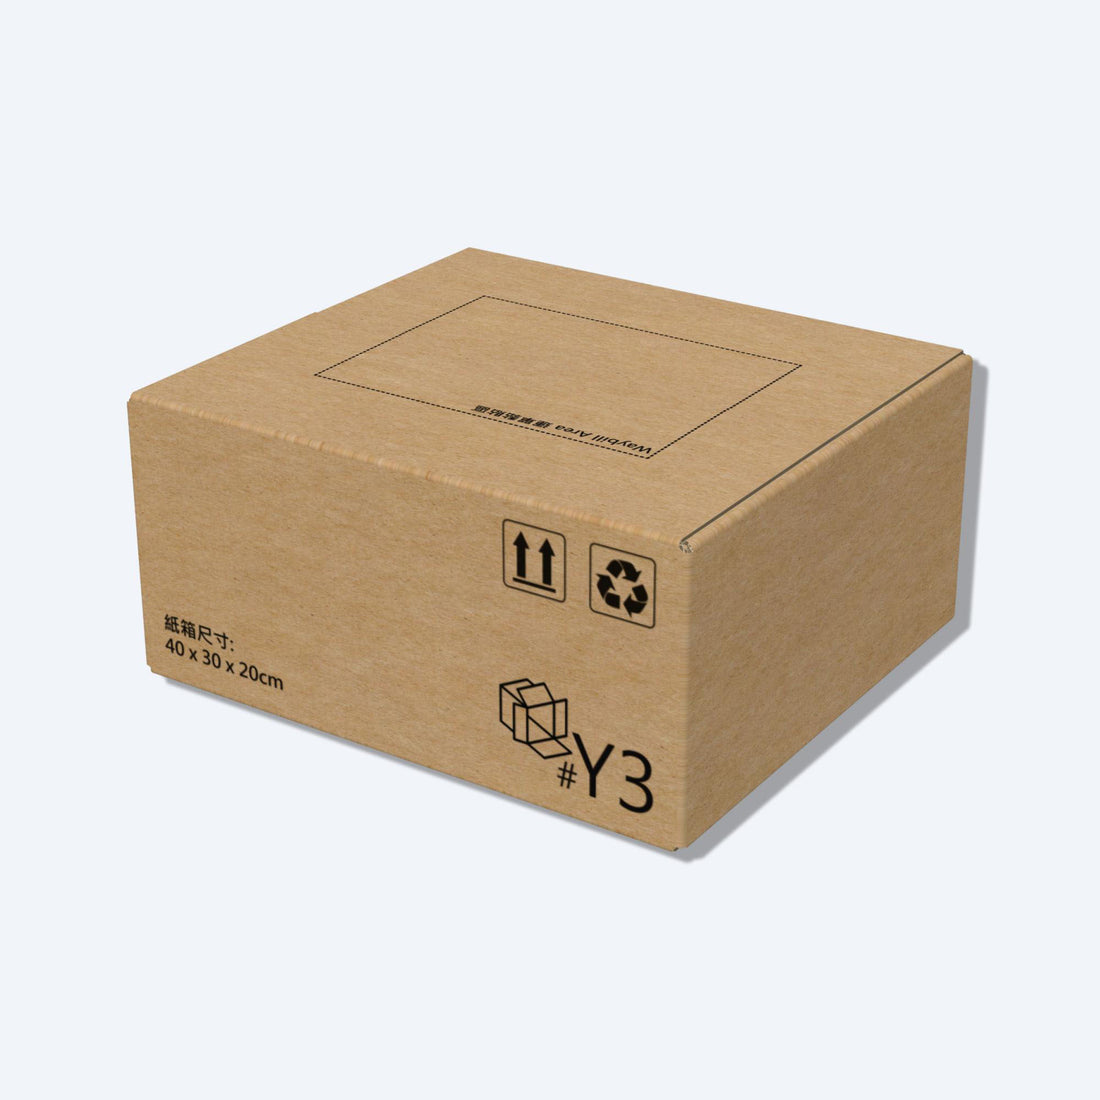 堅固的啡色順豐速運Y3尺寸紙箱正面圖，這款快遞紙箱專為順豐速運設計。